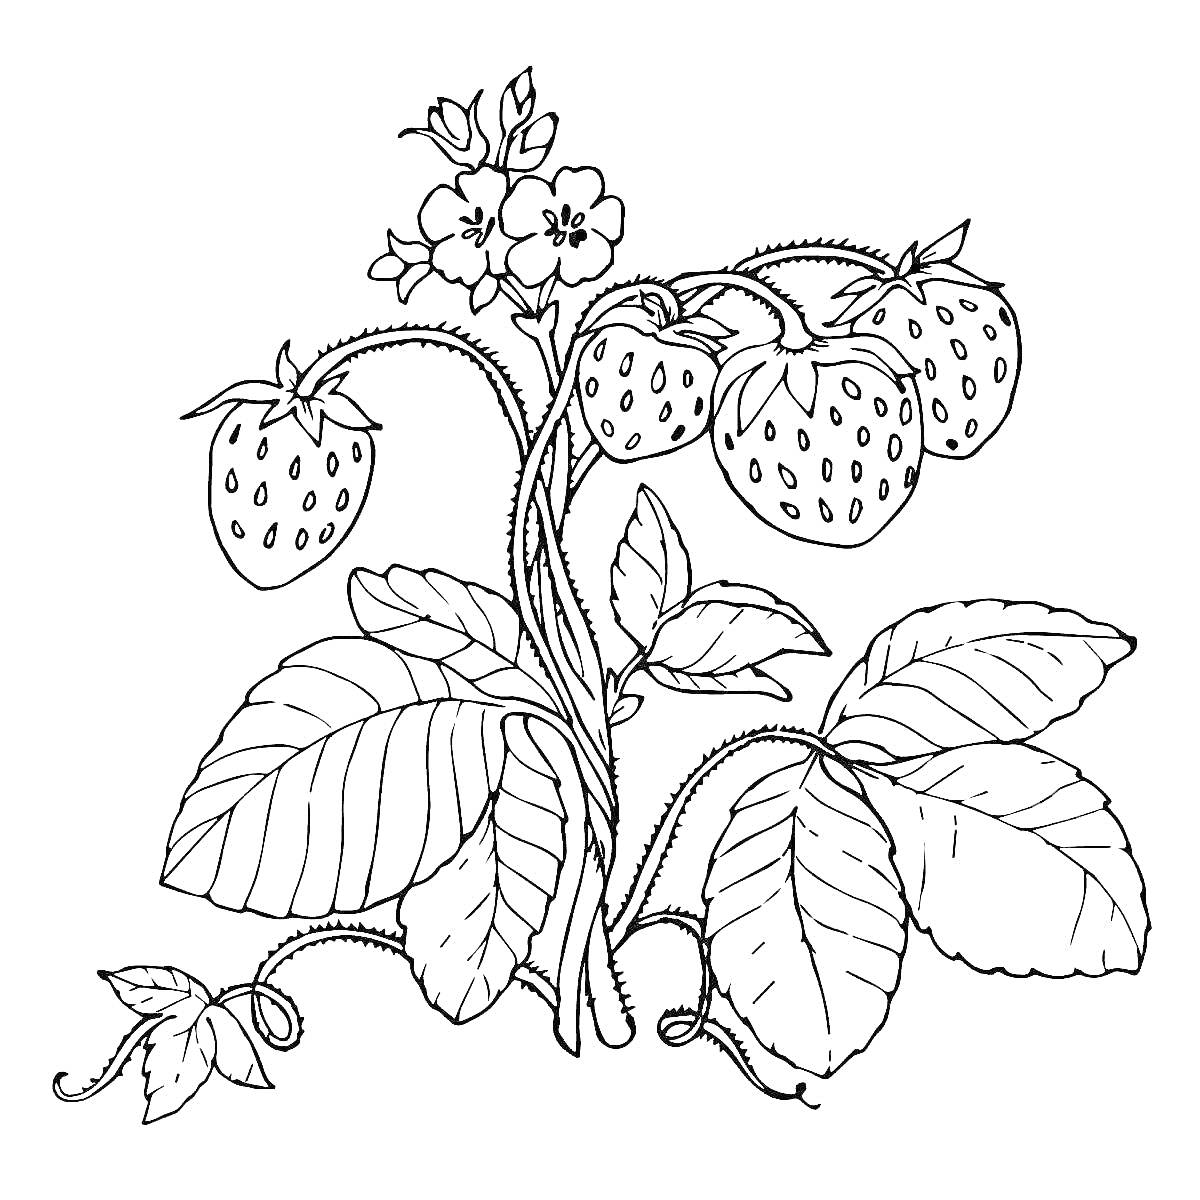 Земляника с ягодами, цветами и листьями